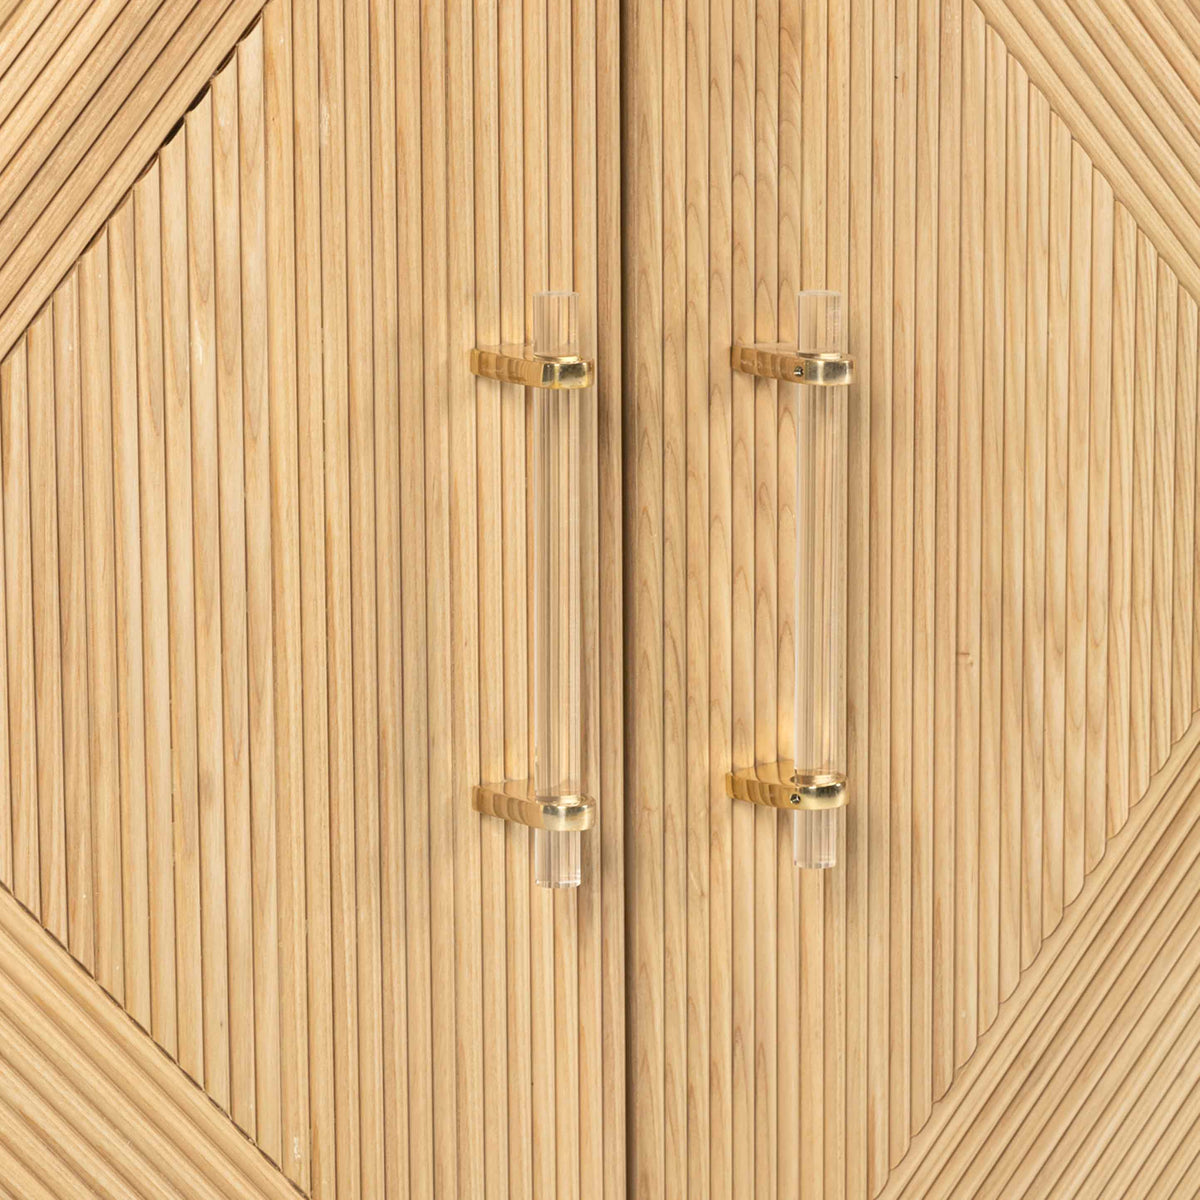 detail credenza door ash wood hardware pulls